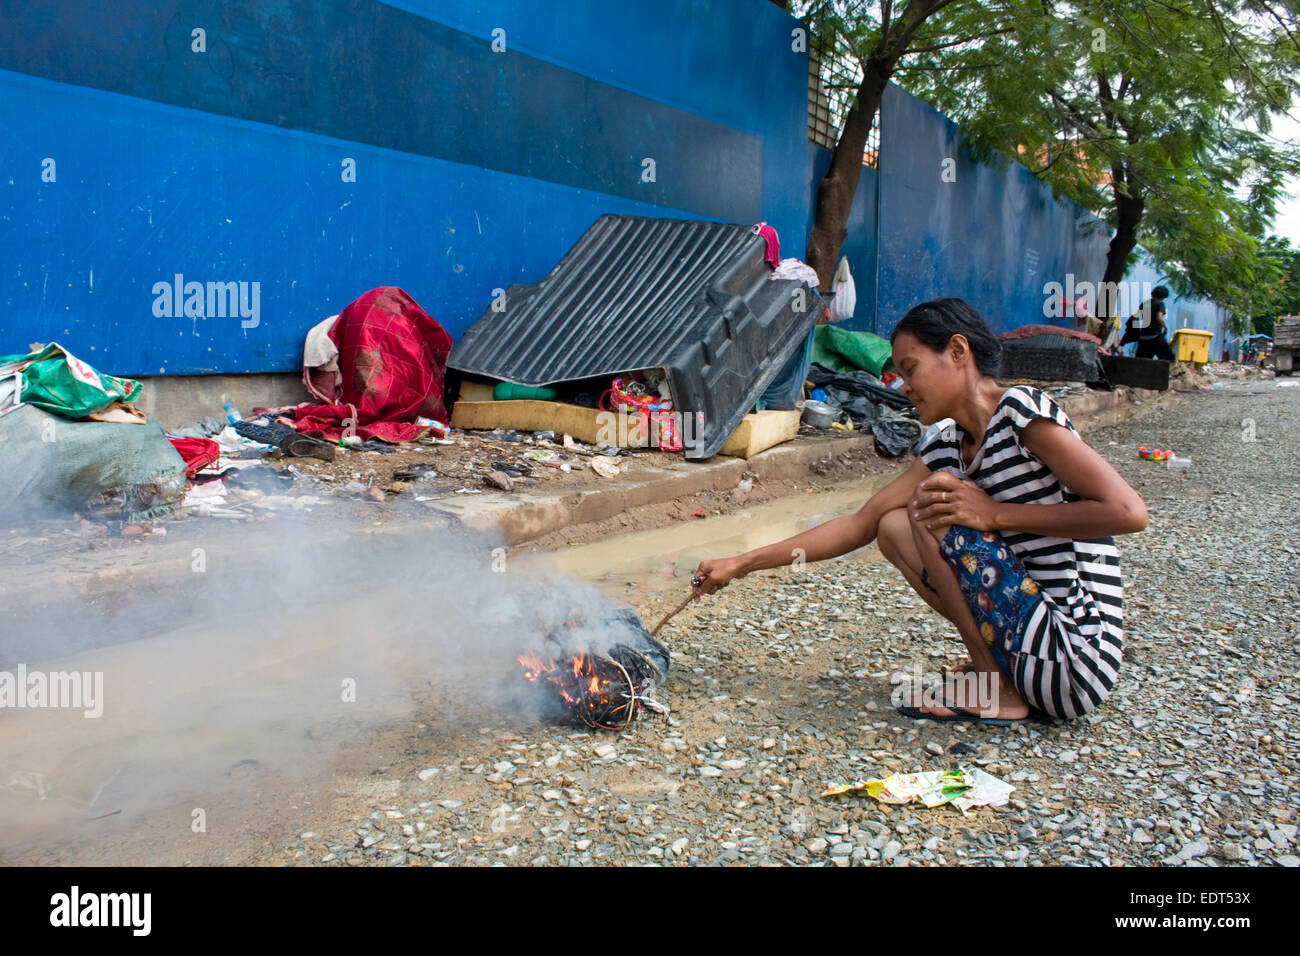 Una donna che lavora come scavenger brucia immondizia davanti al suo rifugio adiacente al Parco Freedom in Phnom Penh Cambogia. Foto Stock